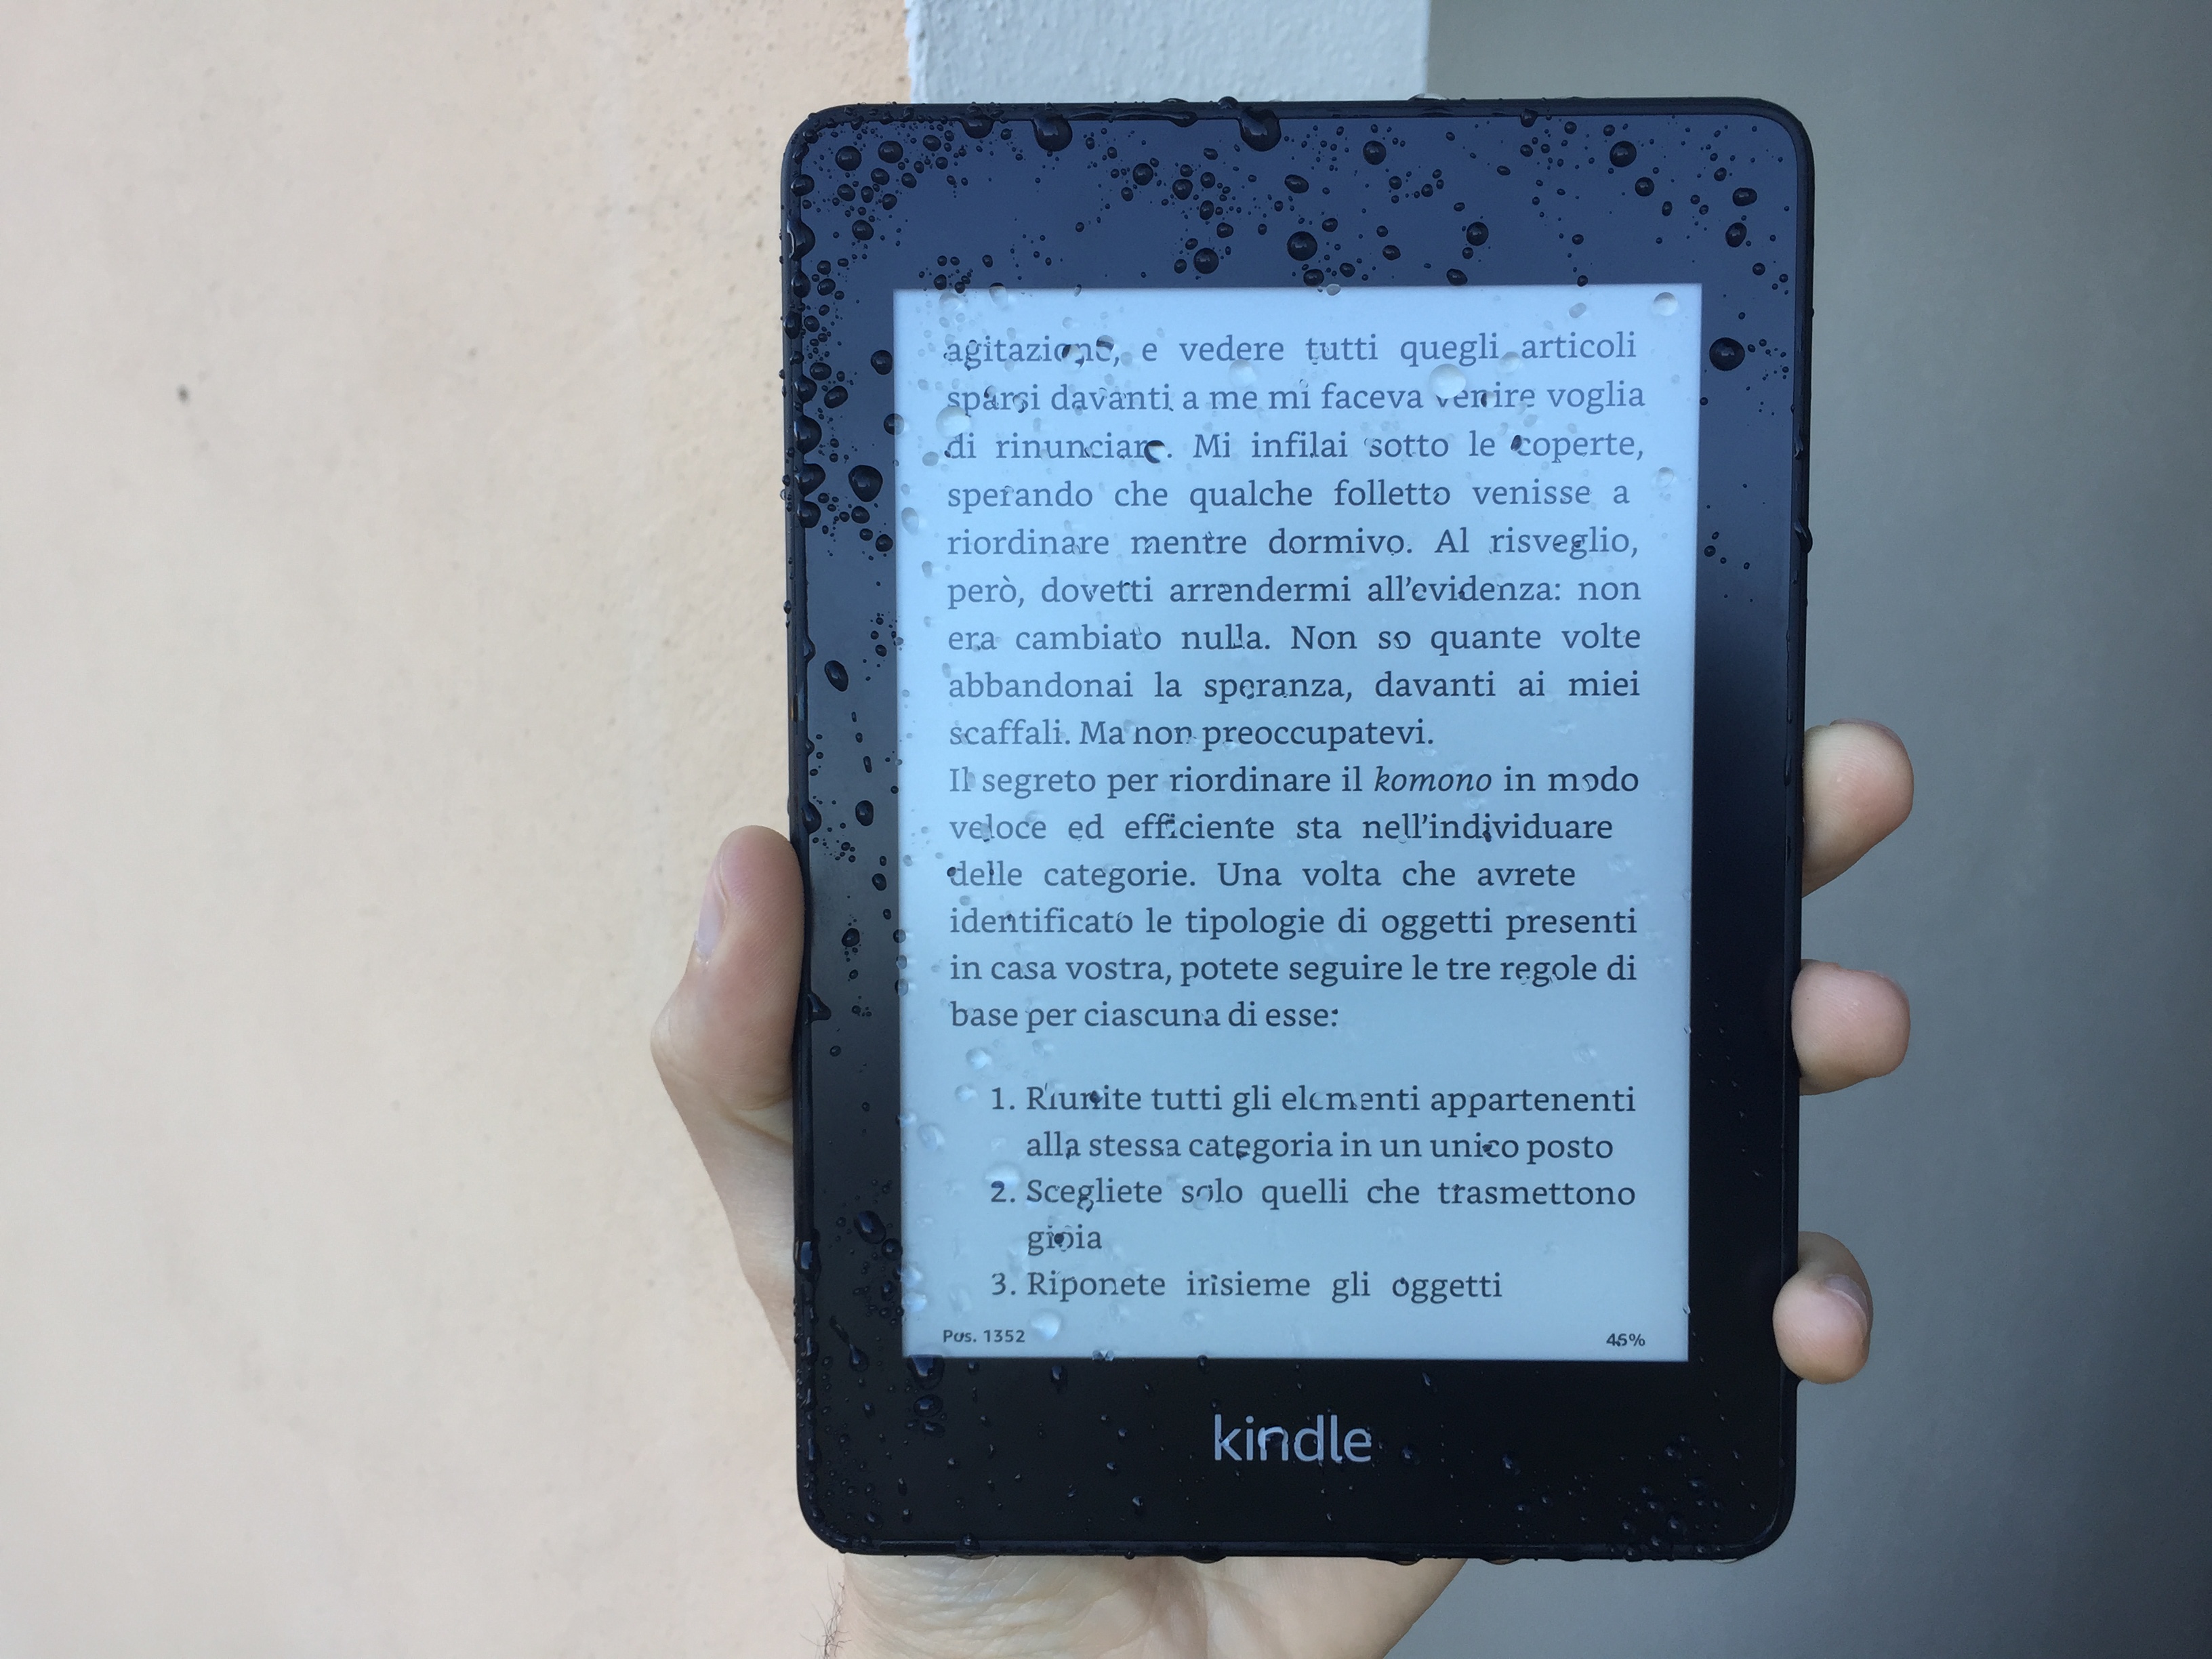 Kindle 2019: la recensione del nuovo ebook reader, acquistabile a 79  euro